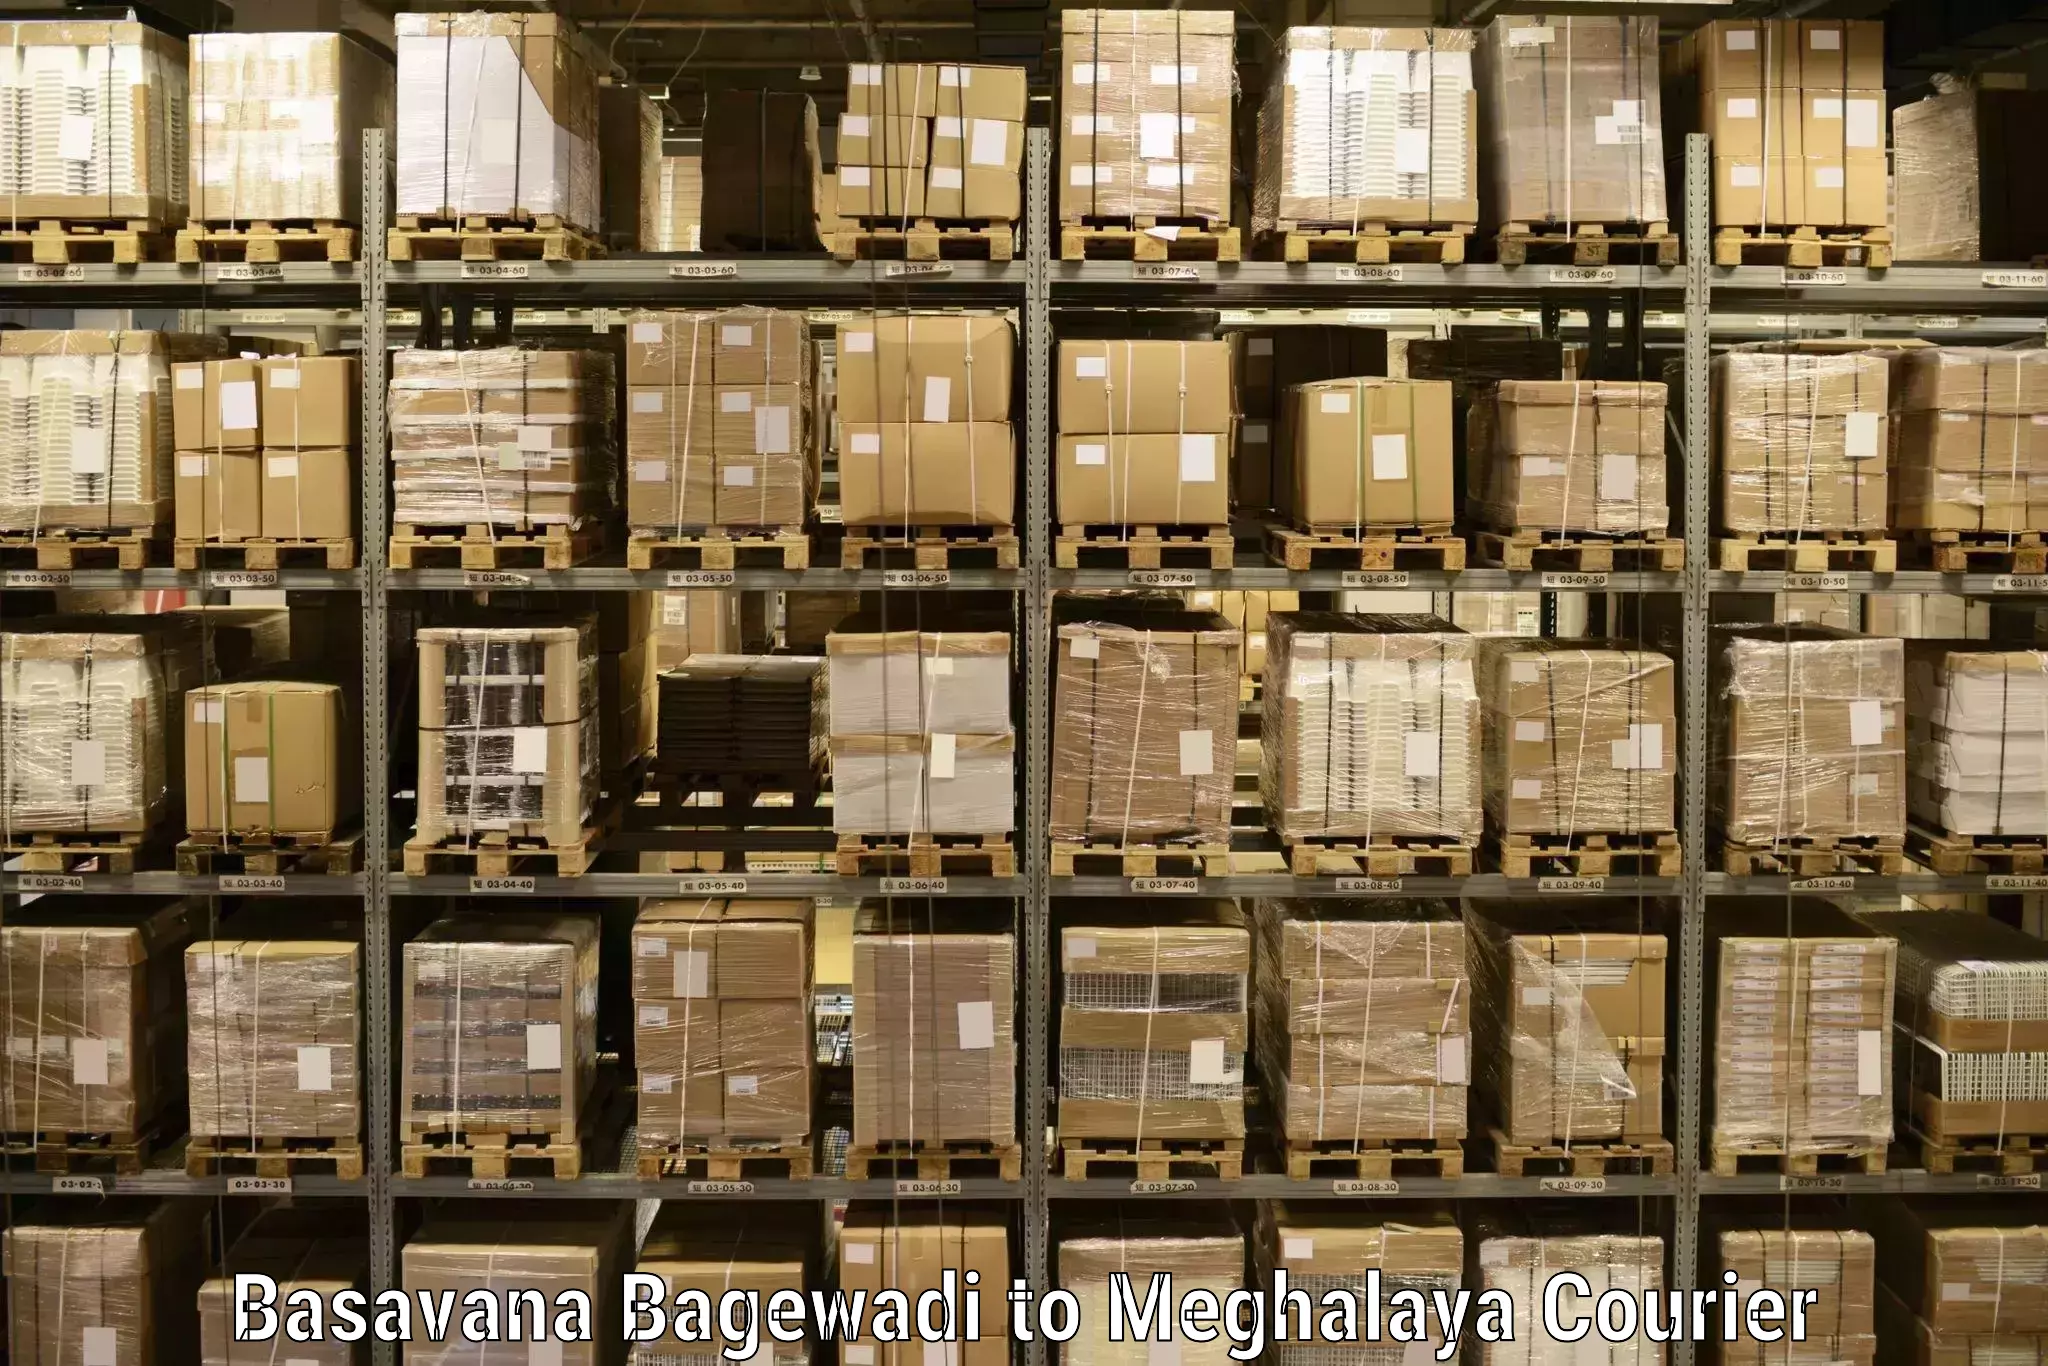 Premium delivery services Basavana Bagewadi to Meghalaya